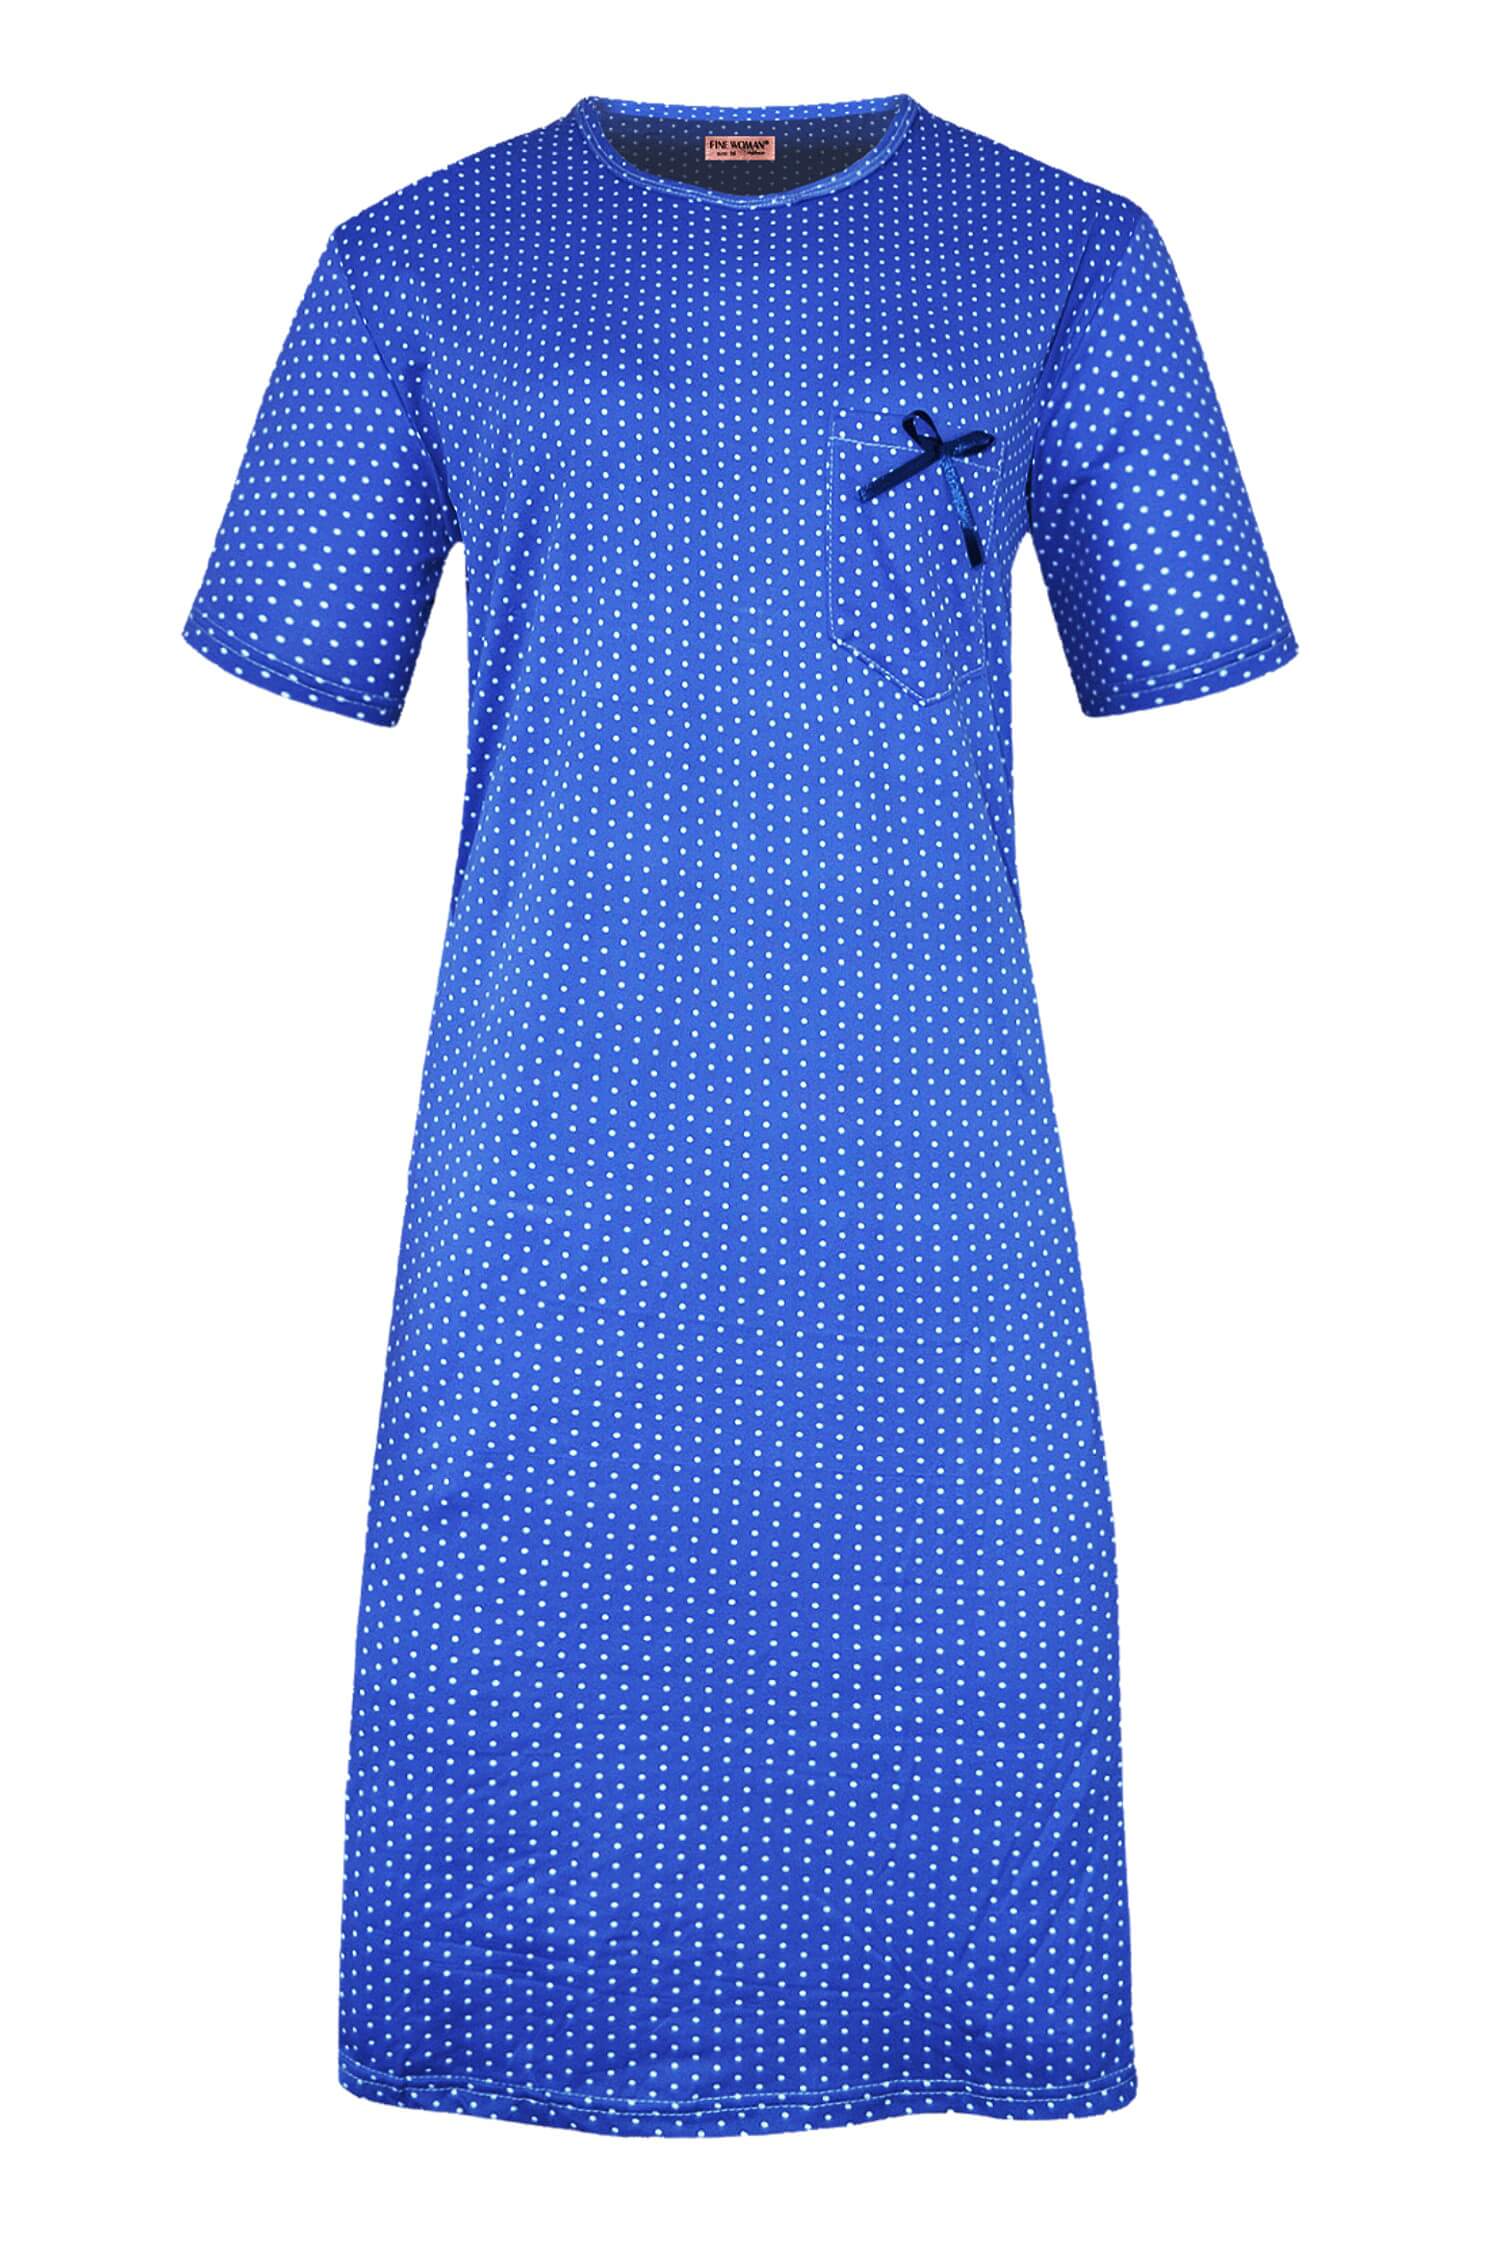 Monika dámská noční košile s puntíky 6533 3XL tmavě modrá